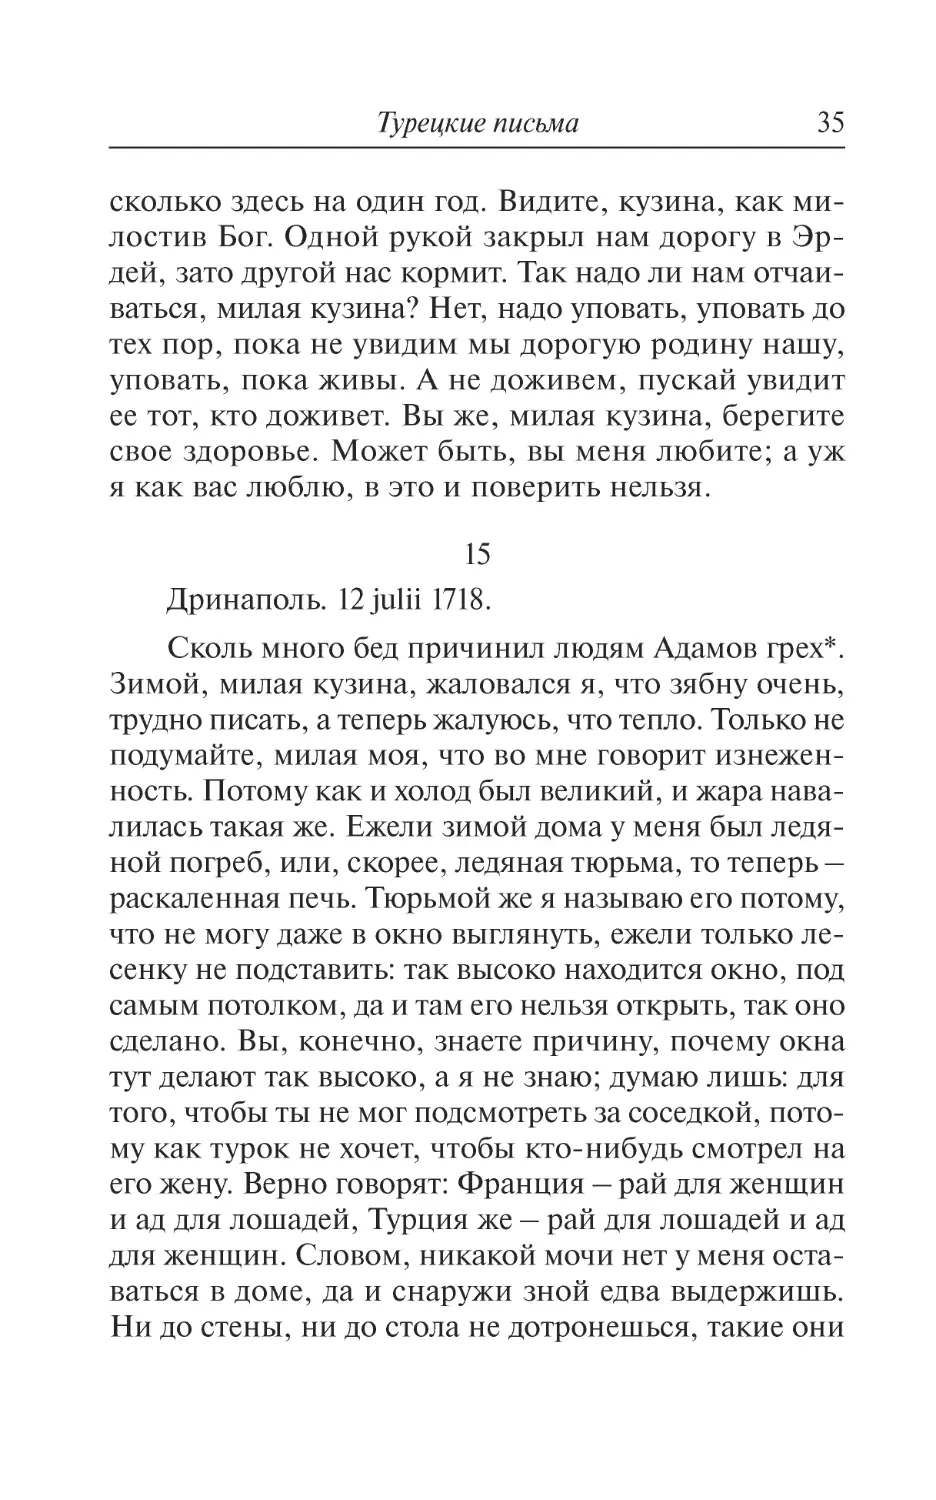 15. Дринаполь. 12 julii 1718